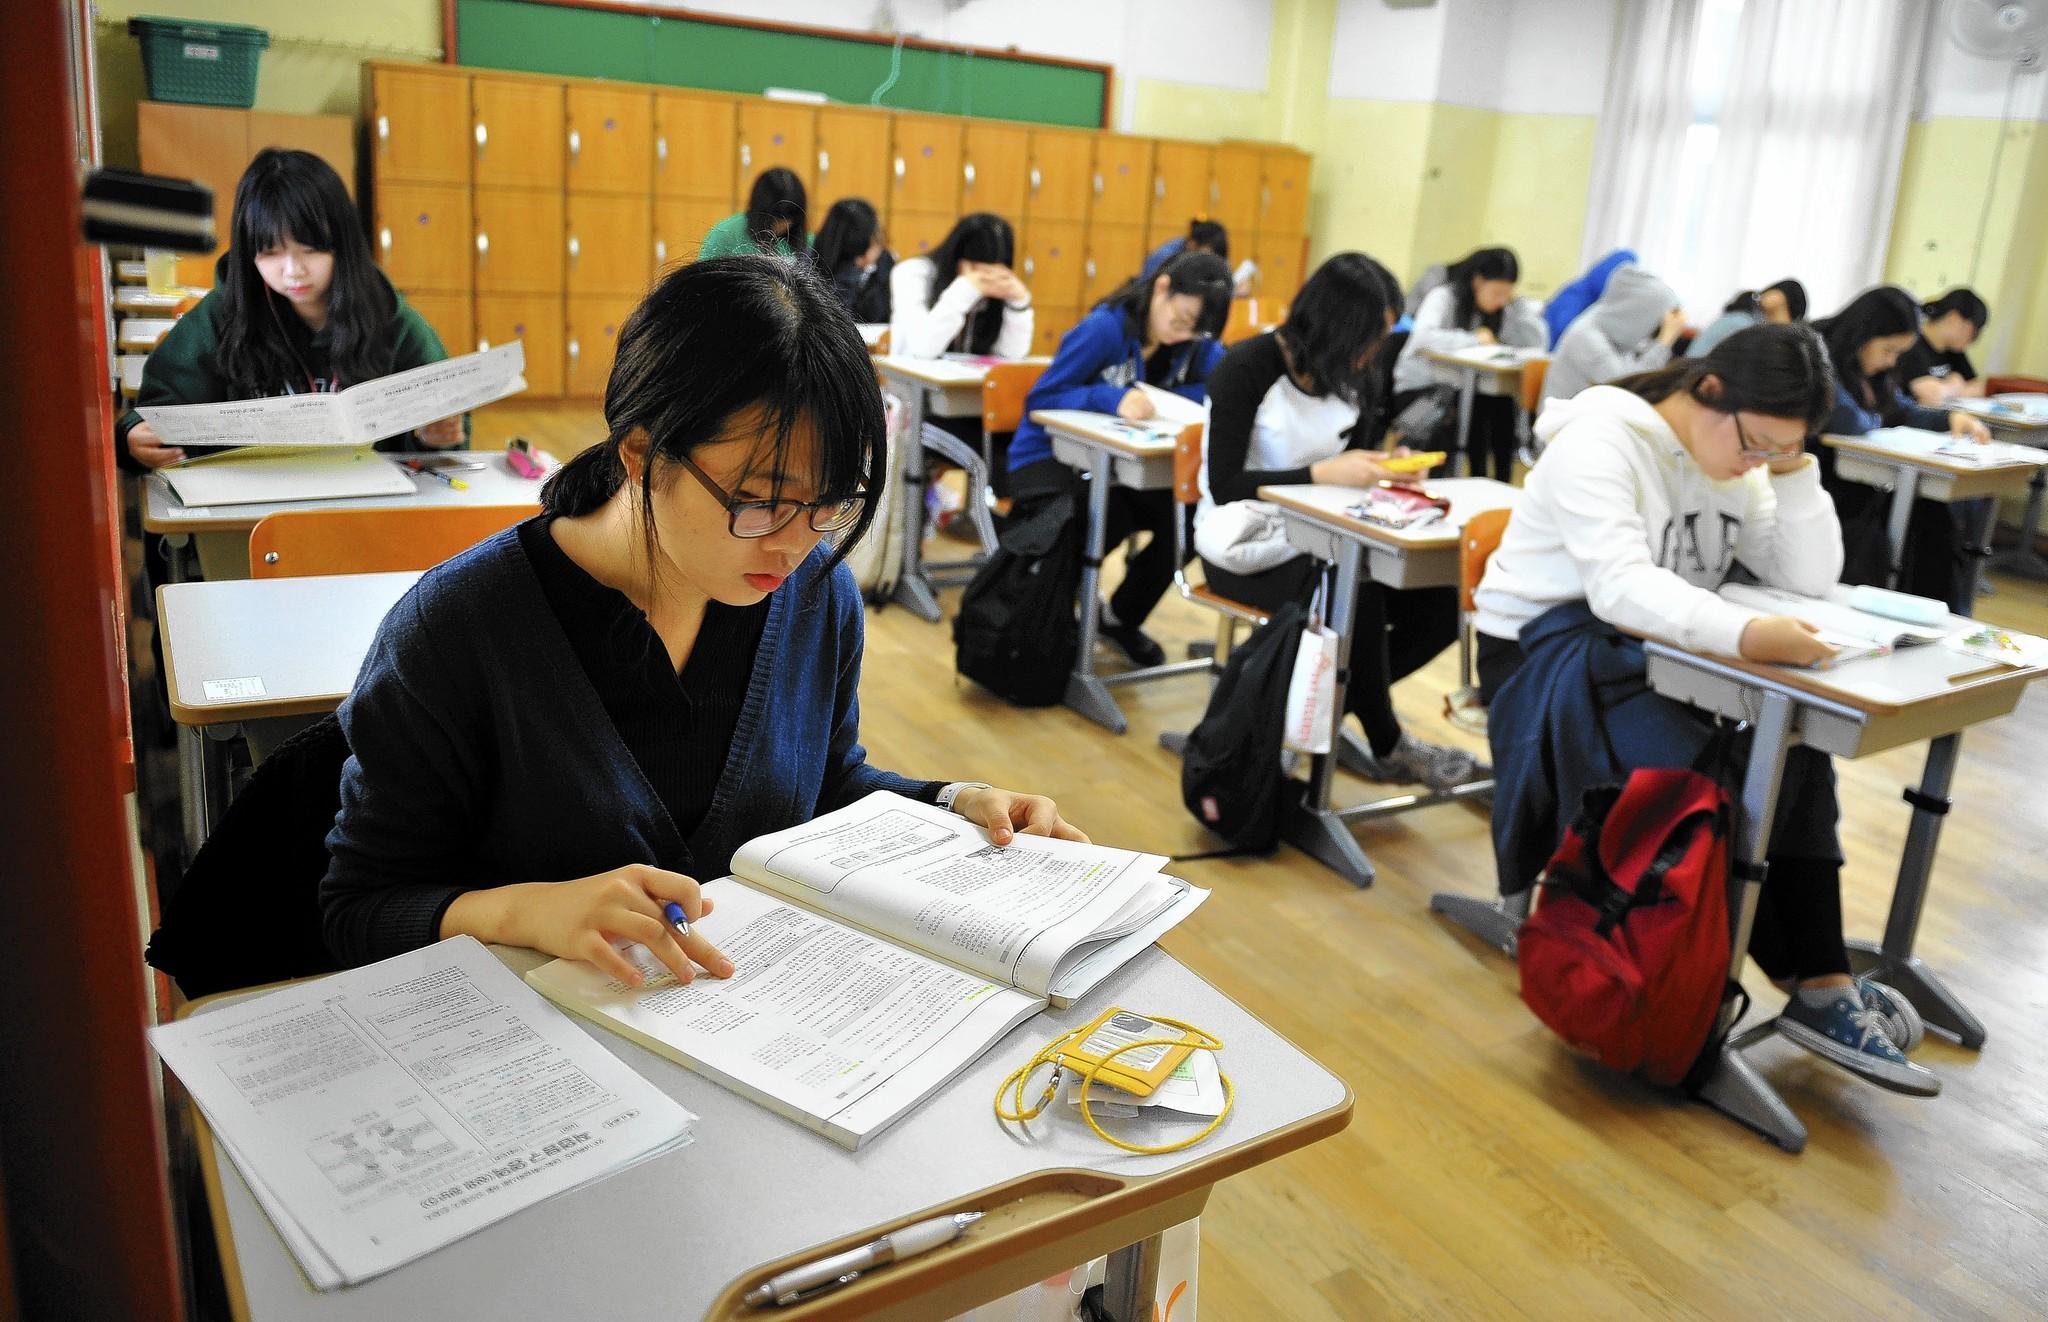 Du học Hàn Quốc ngành sư phạm nên chọn trường nào?